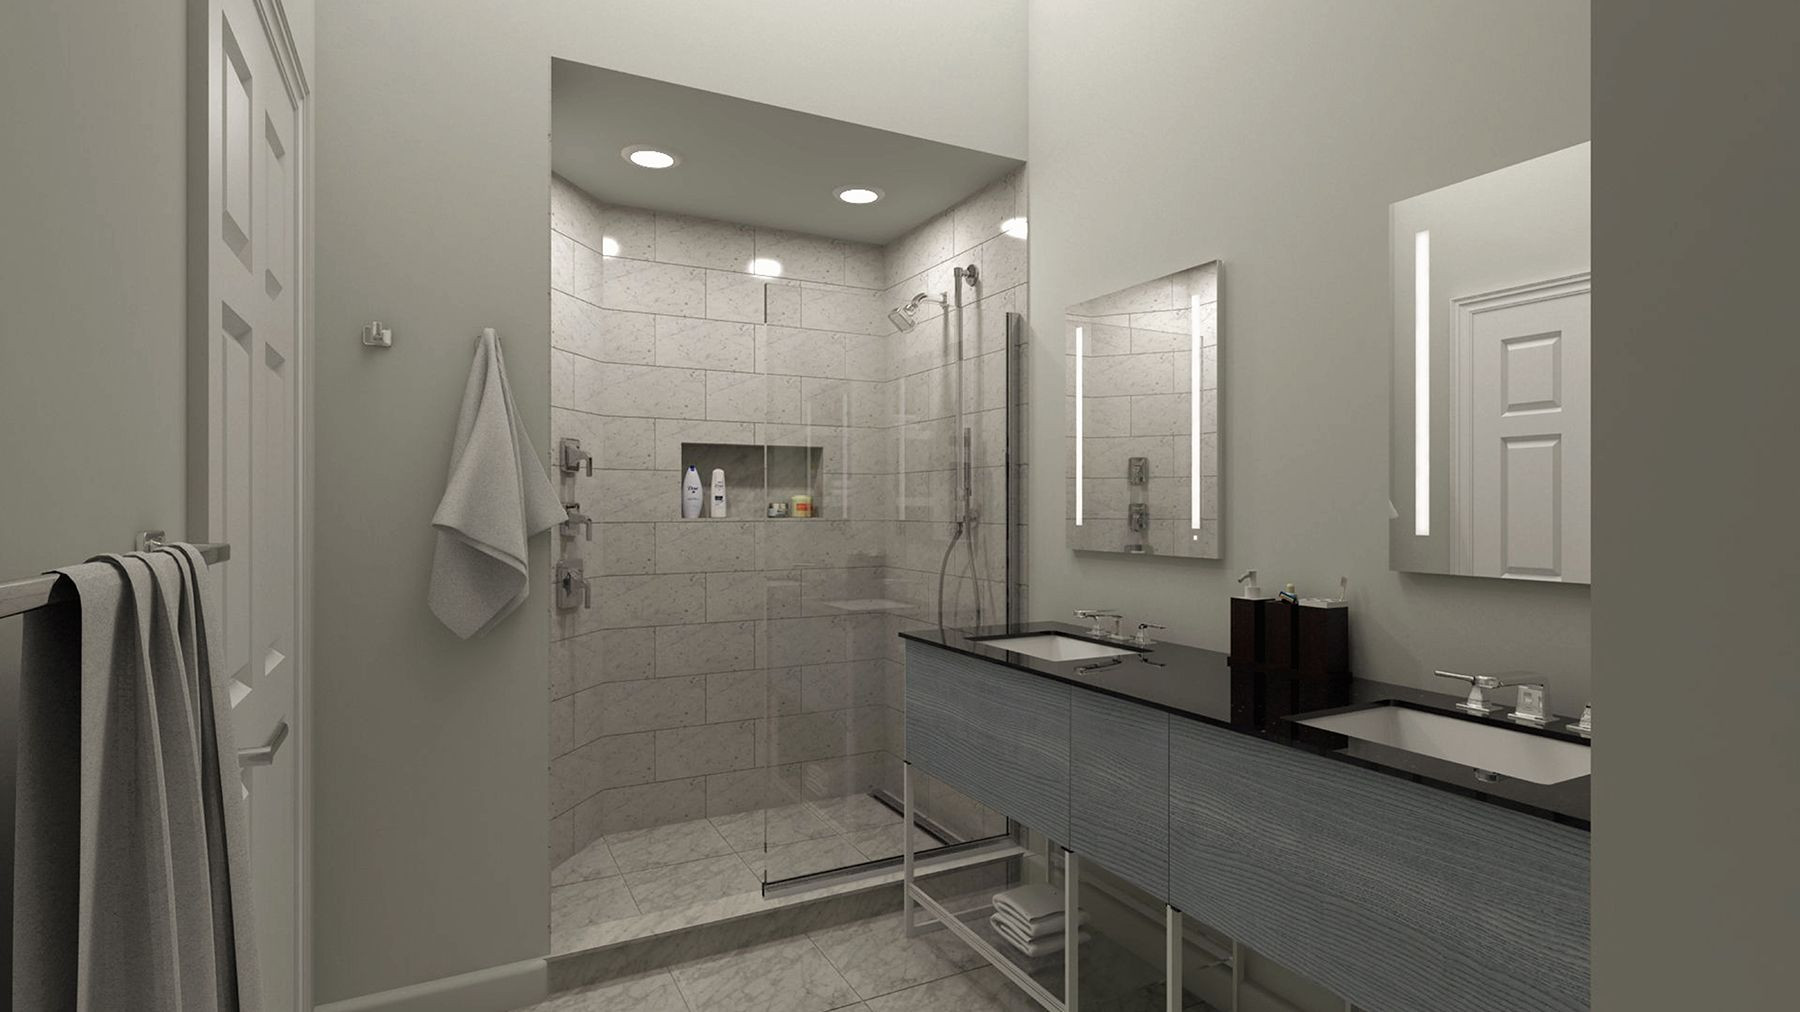 Kohler Bathroom Design
 KOHLER Bathroom Design Service